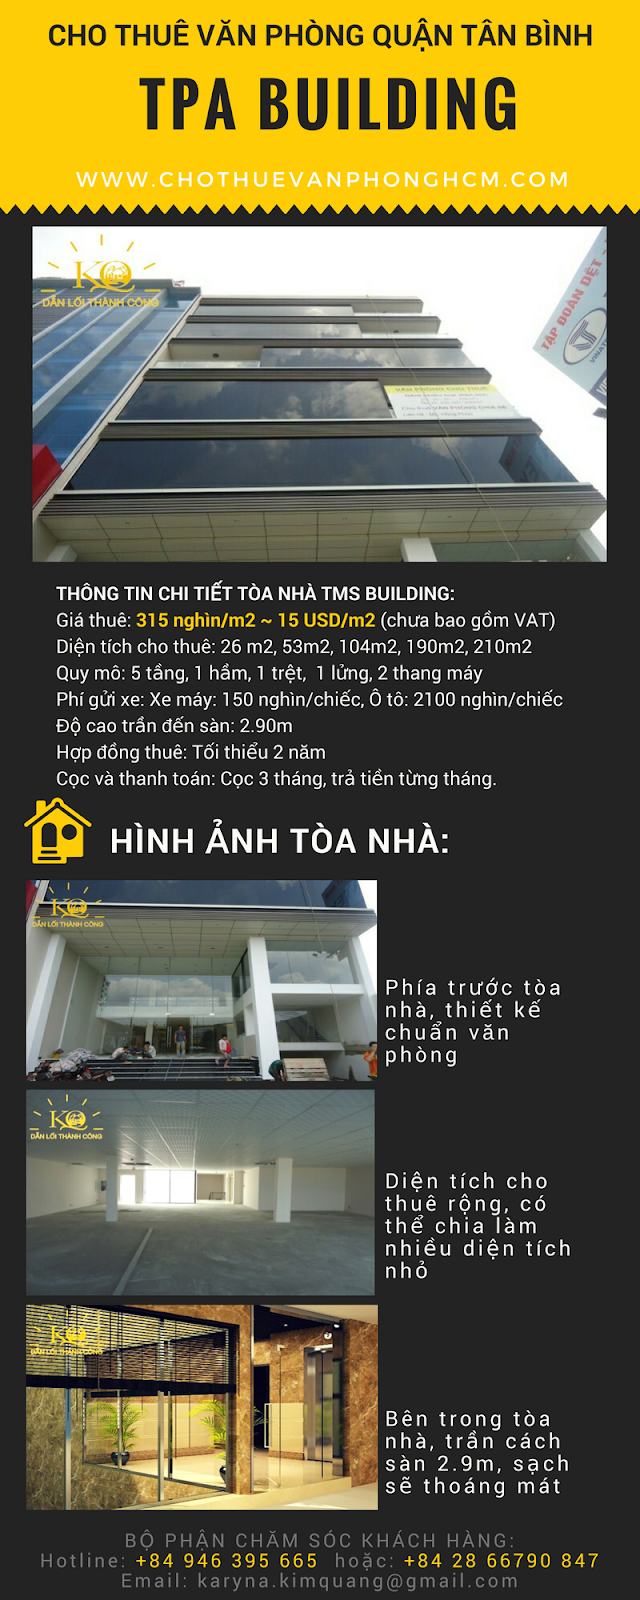 Cao ốc văn phòng cho TPA Building đường Trường Sơn